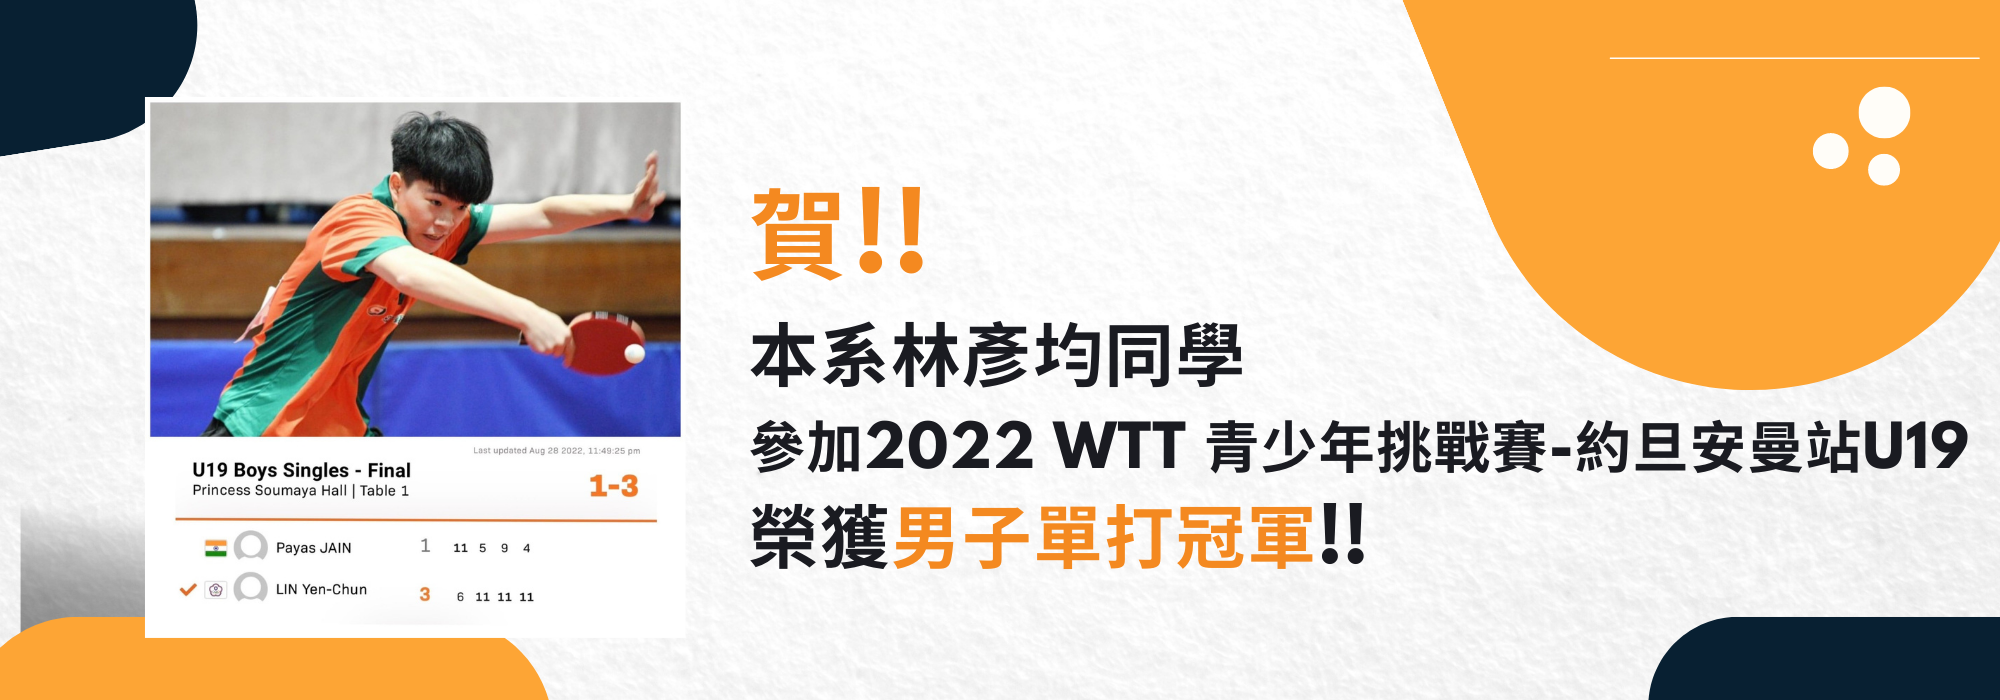 賀林彥均同學參加2022 WTT 青少年挑戰賽U19榮獲男單冠軍